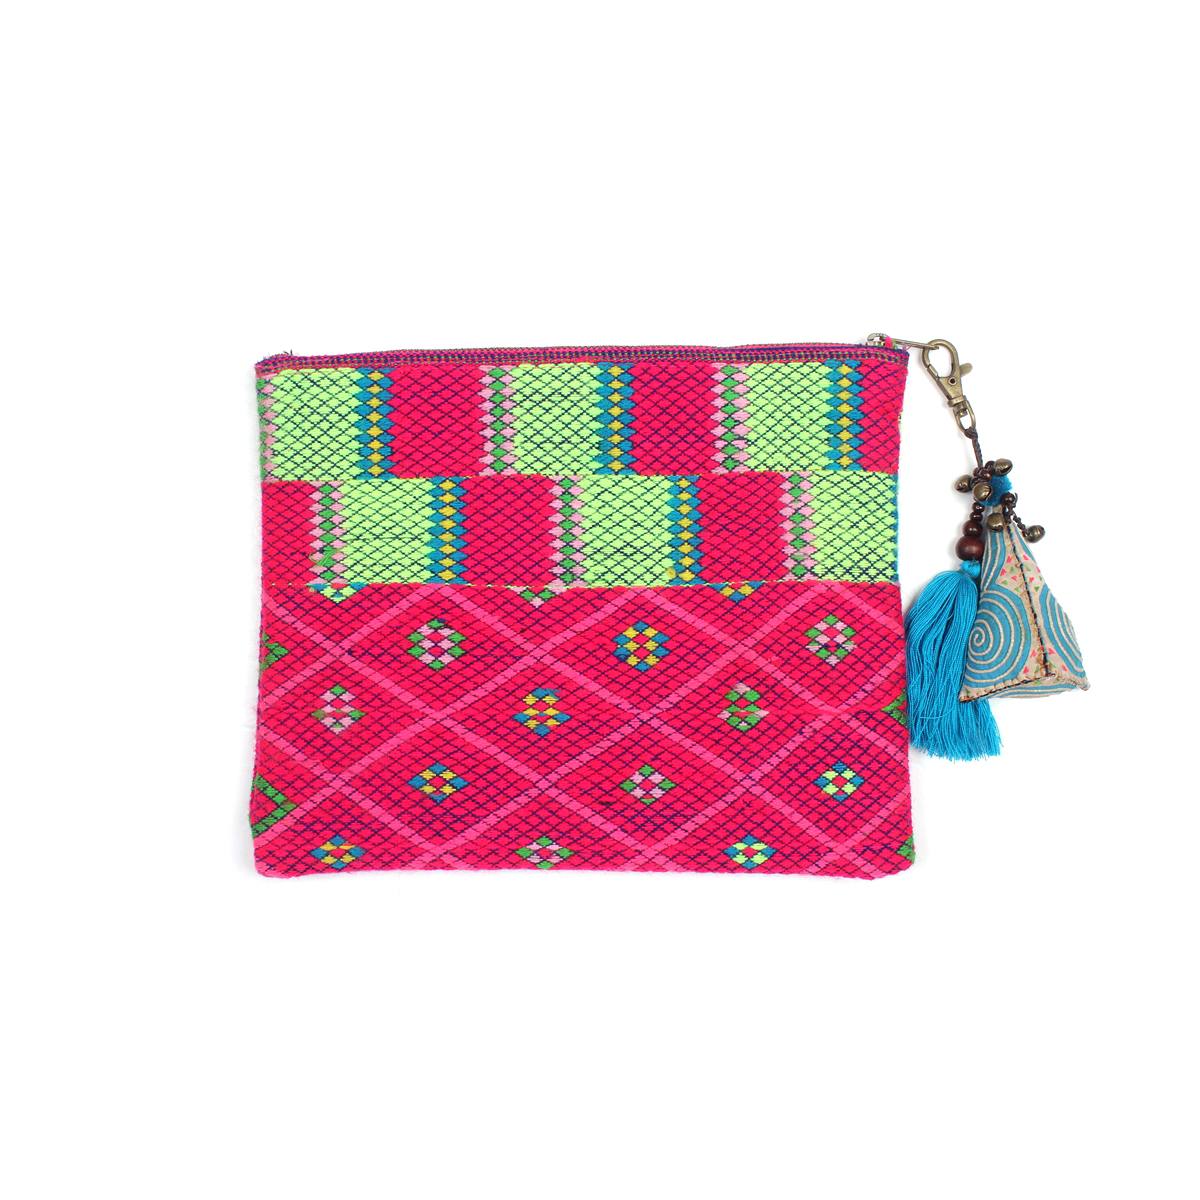 Traditional purse | Bridal clutch bag, Bridal clutch, Green clutch bags